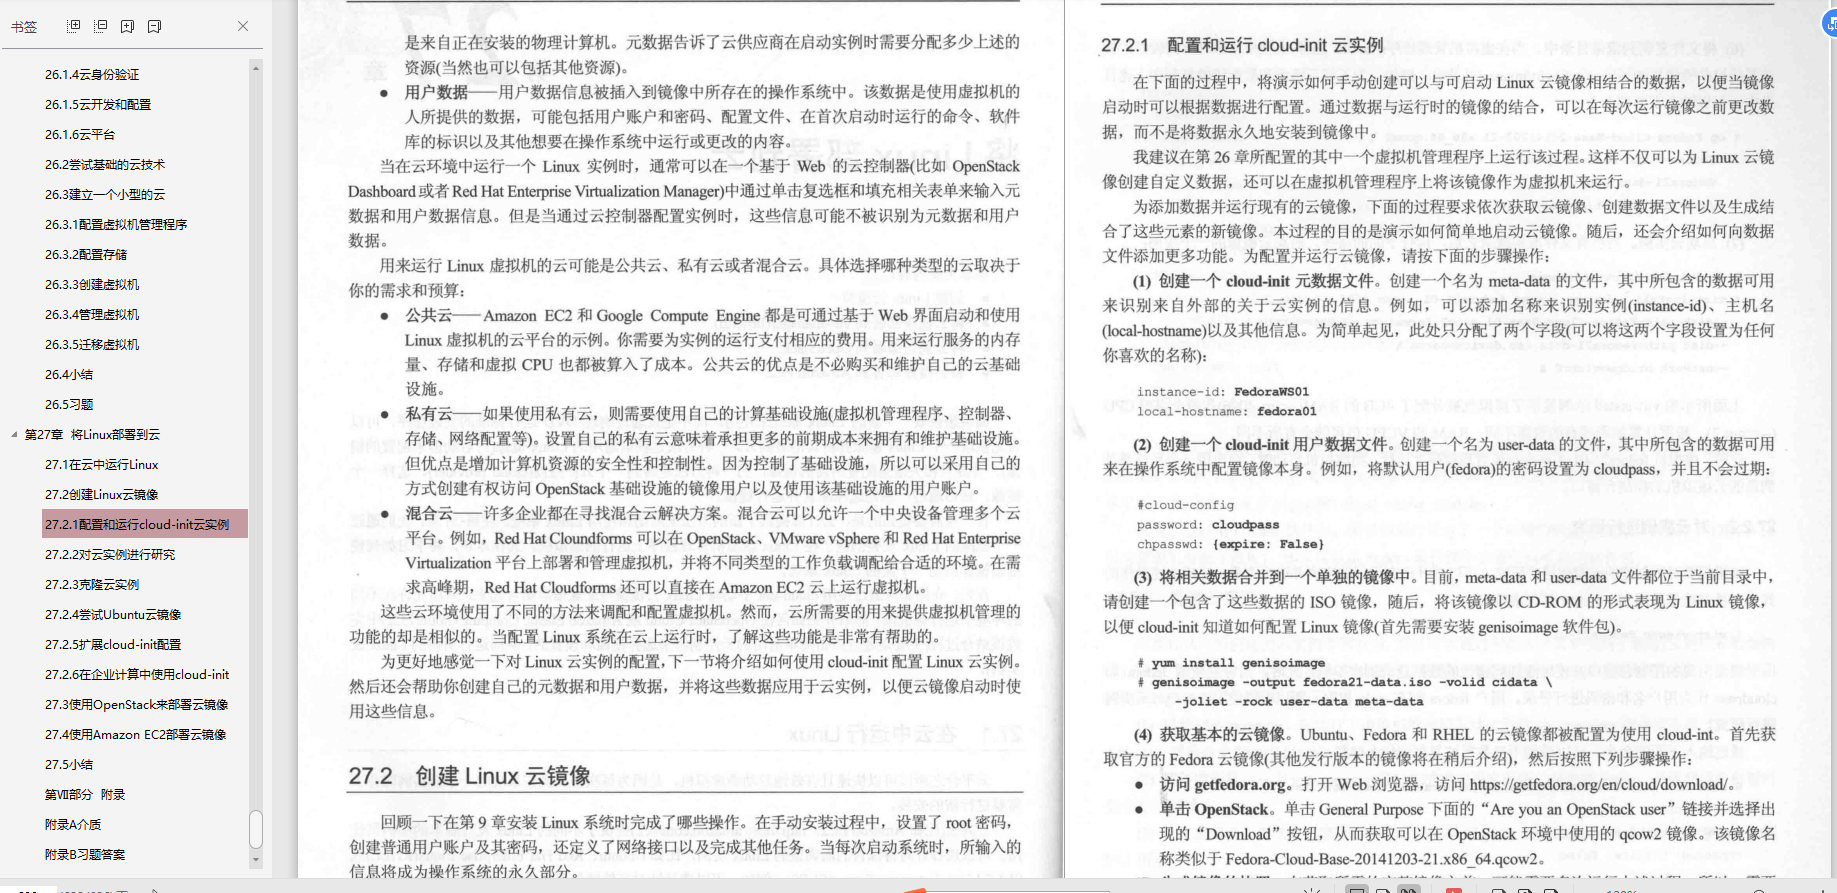 ¡Quiéralo!  La versión PDF de las notas de Linux resumidas por los ingenieros de Huawei está disponible para su descarga por tiempo limitado.